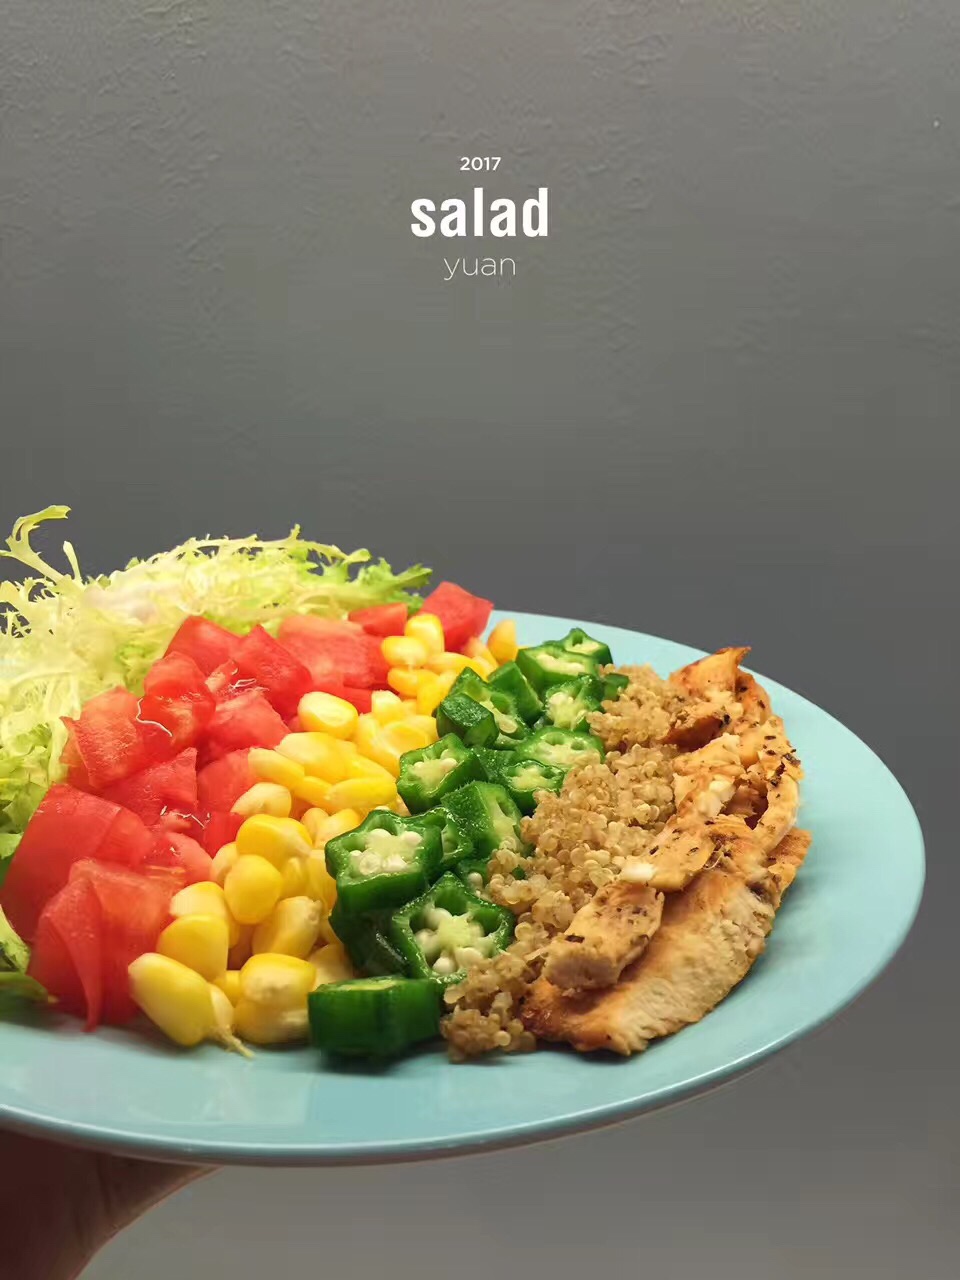 轻食减肥沙拉摆盘参考 一星期不重样的做法